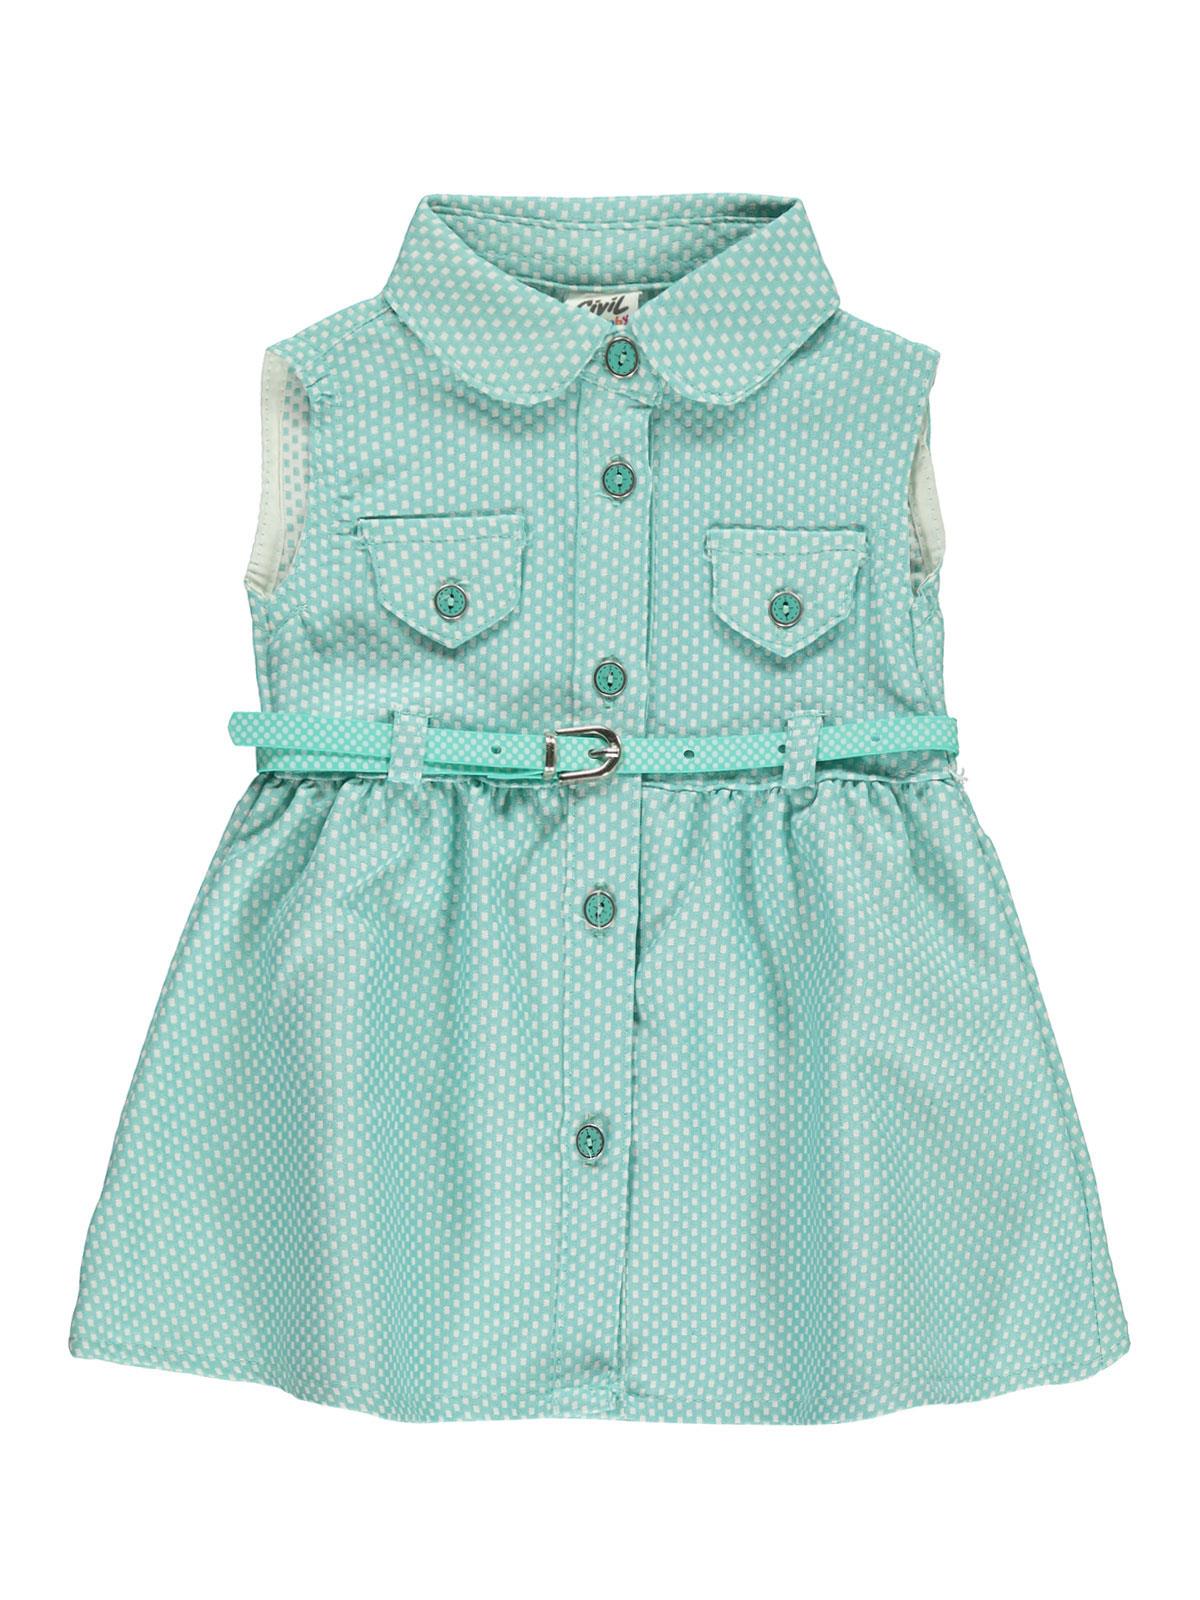 Civil Baby Kız Bebek Elbise 6-18 Ay Mint Yeşili